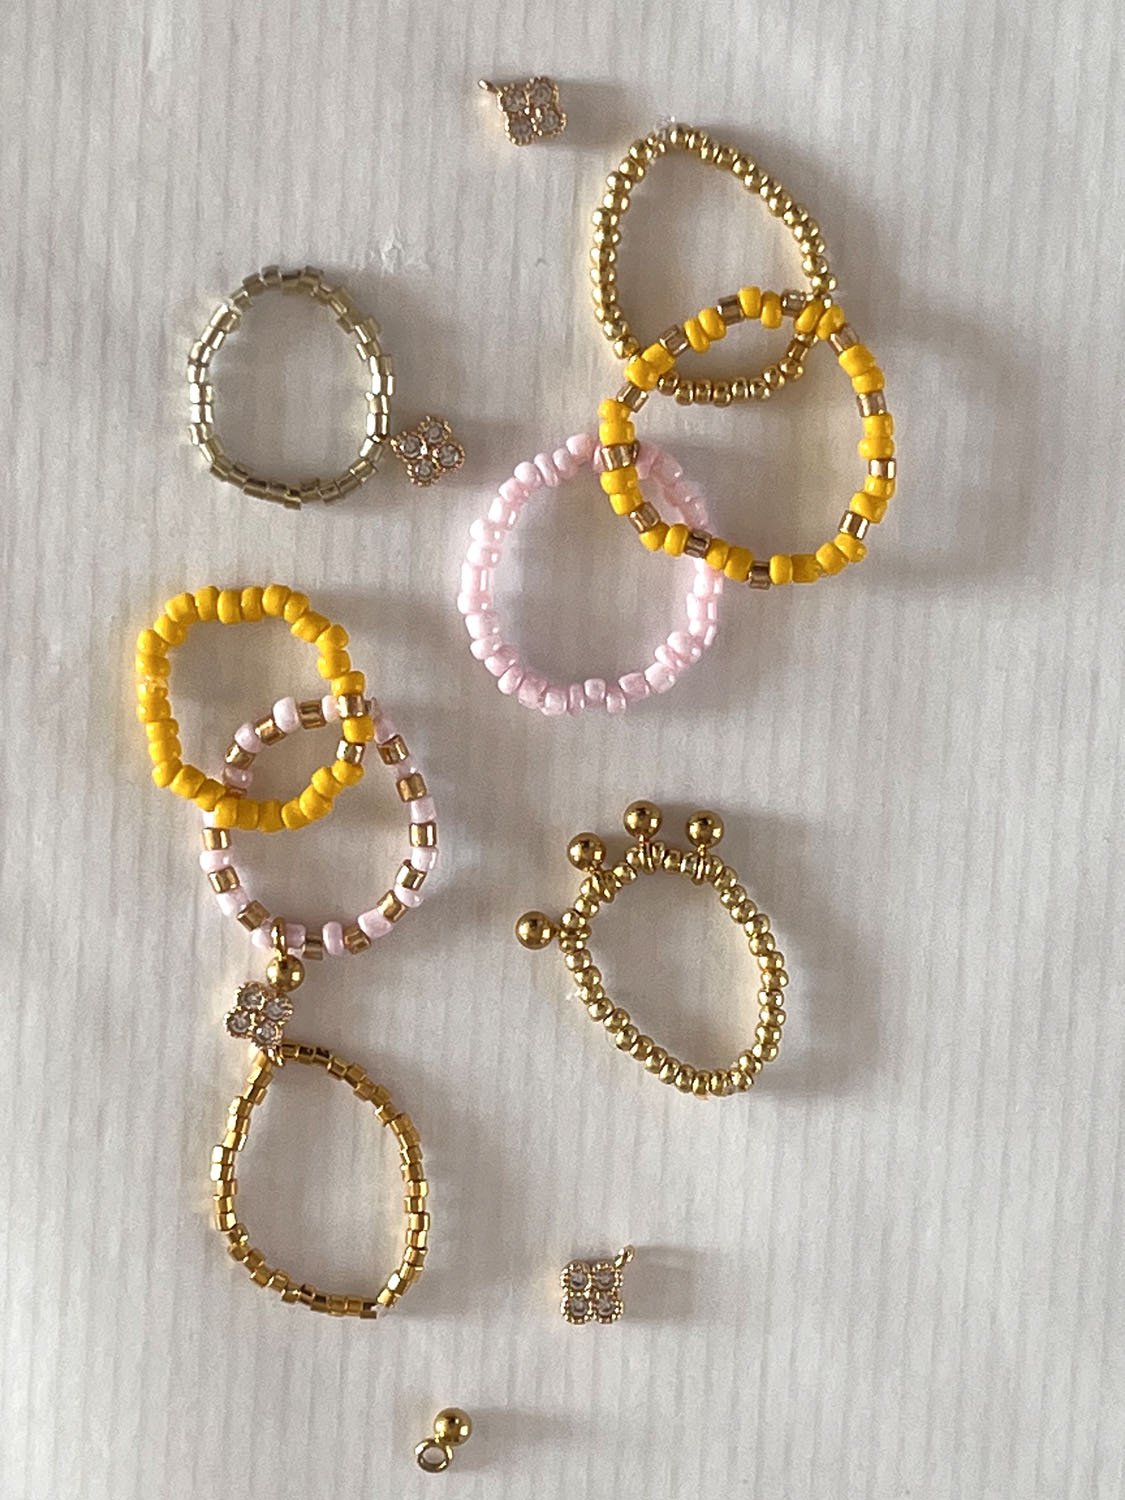 Tutoriel DIY Bijoux : Astuces pour créer des bagues en perles